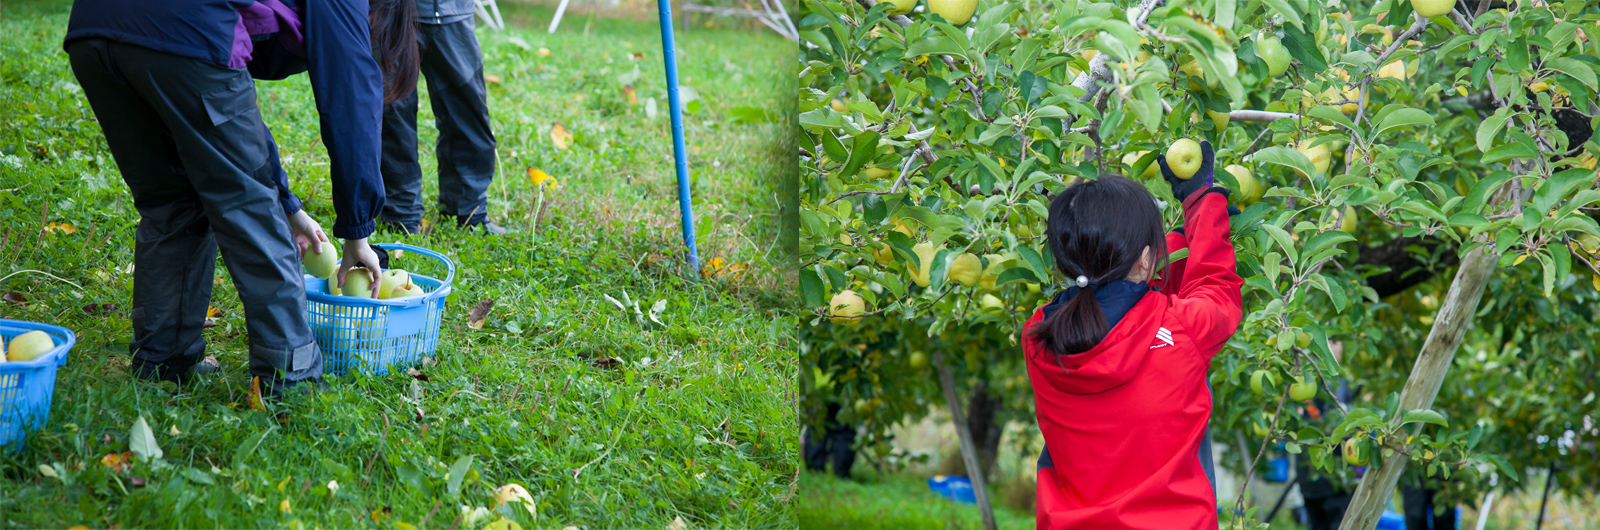 りんご収穫体験の様子